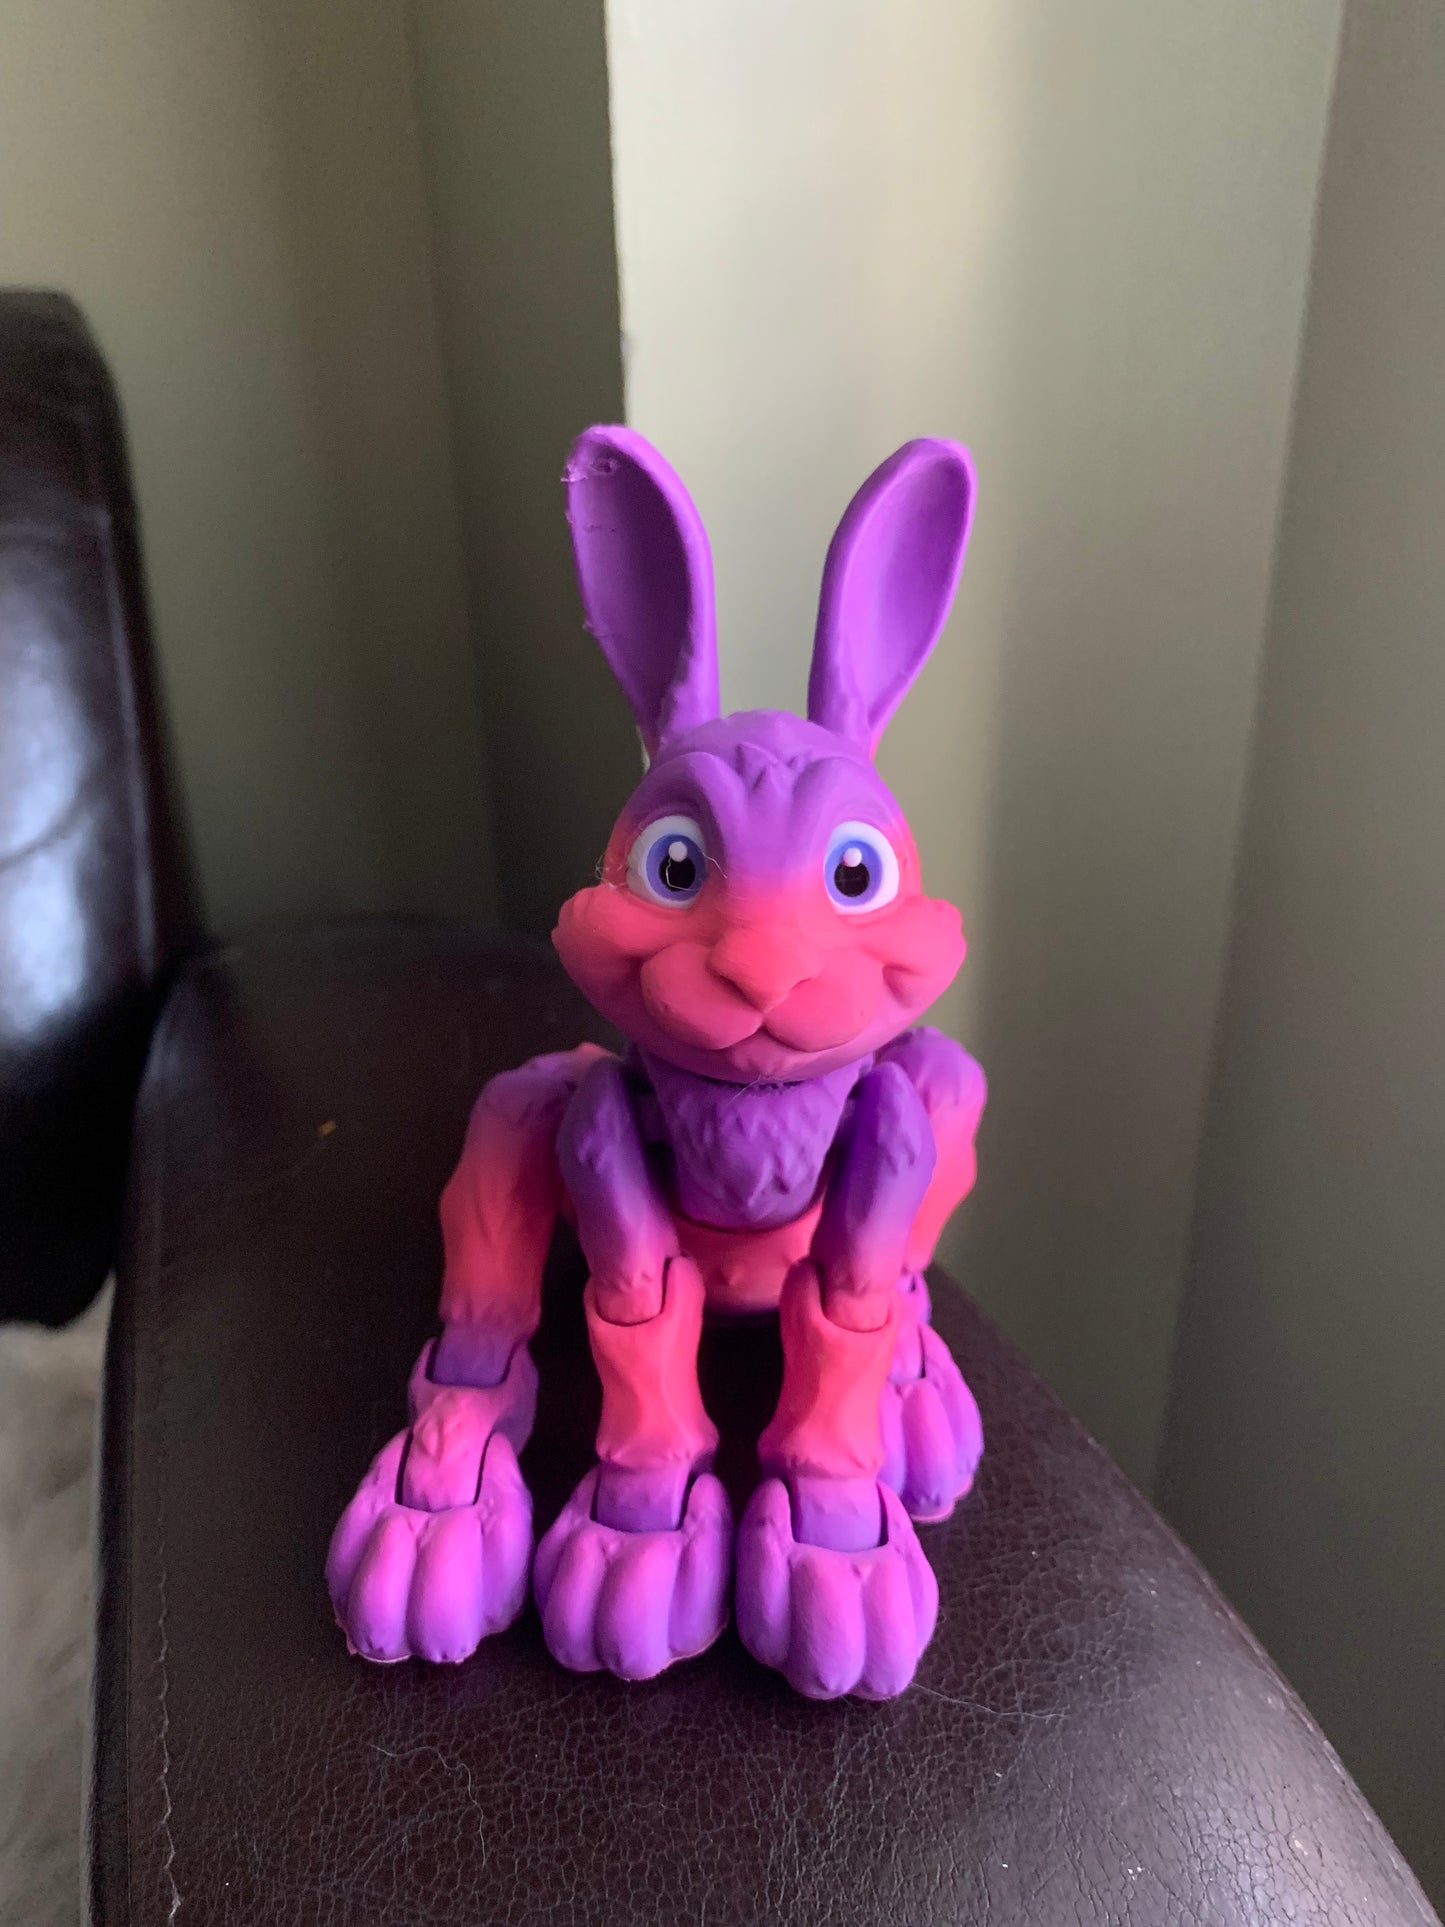 Bunny Rabbit Flexi Model Toy